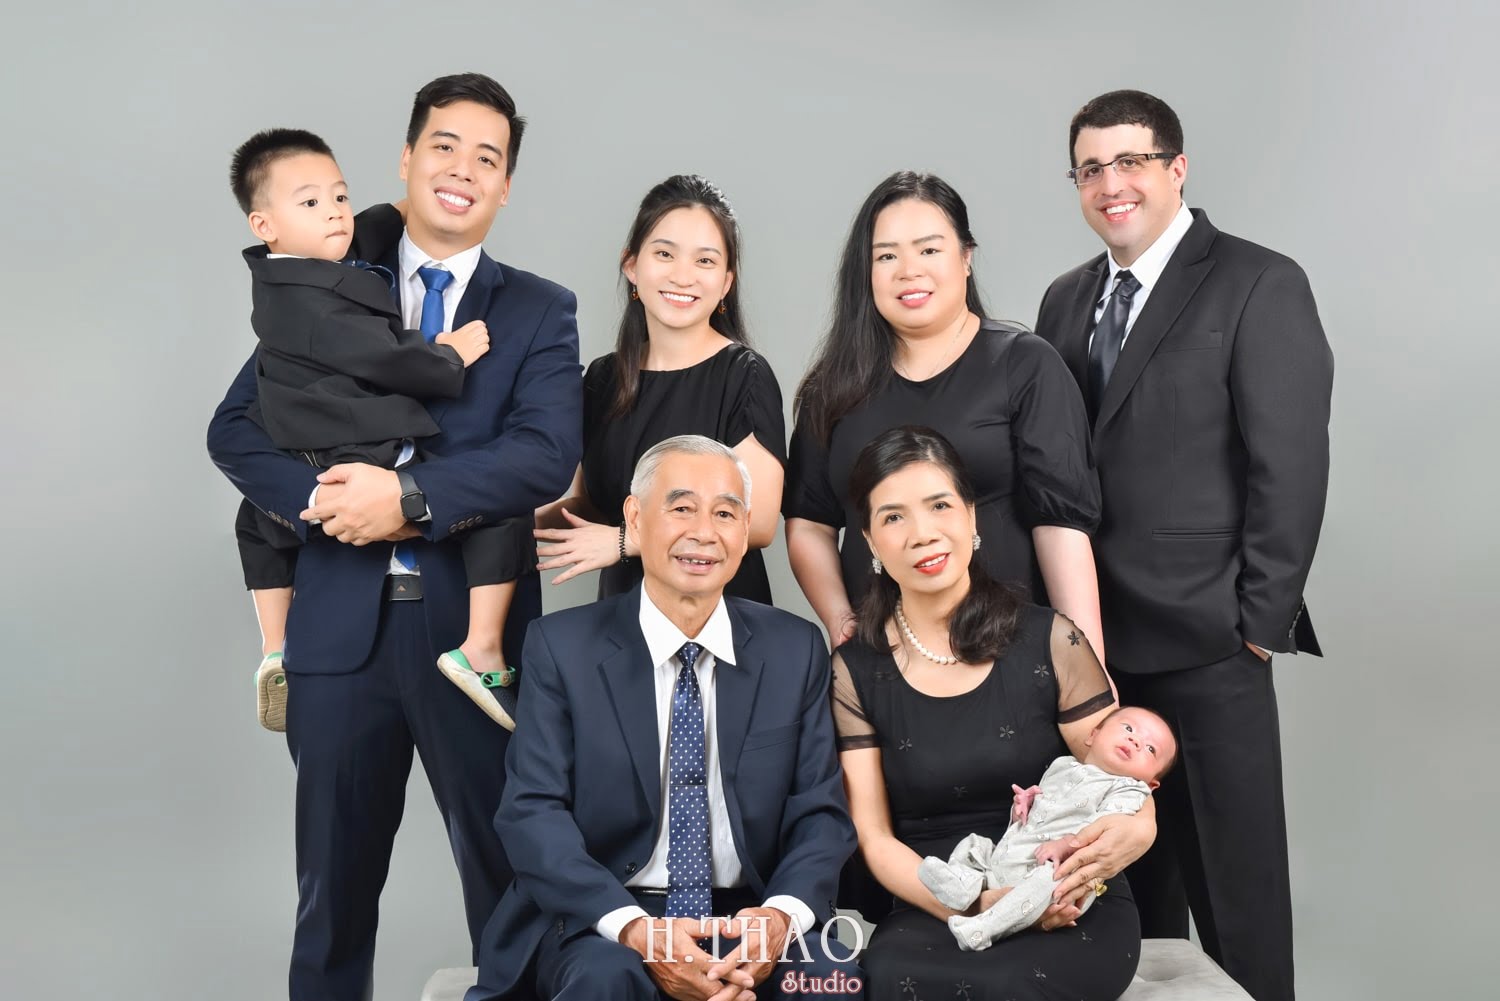 Anh gia dinh dep 3 min - Bỏ túi 3 bí quyết chụp ảnh gia đình đẹp - HThao Studio